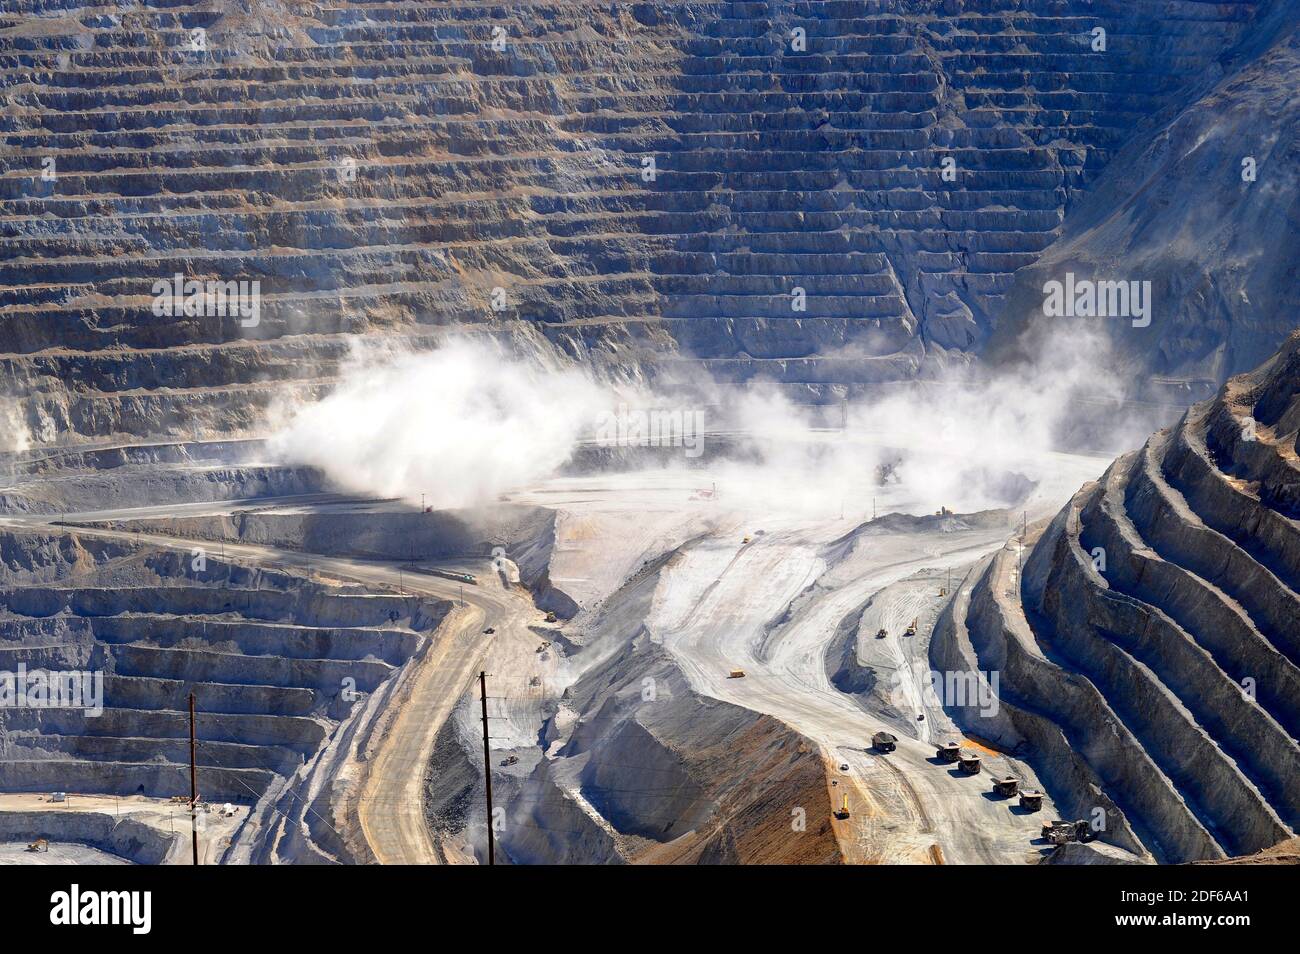 Bingham Canyon Mine en el momento de la explosión controlada. El cañón de Bingham, conocido como la mina Kennecott, es una mina de cobre a cielo abierto. Montañas Oquirrh, Foto de stock